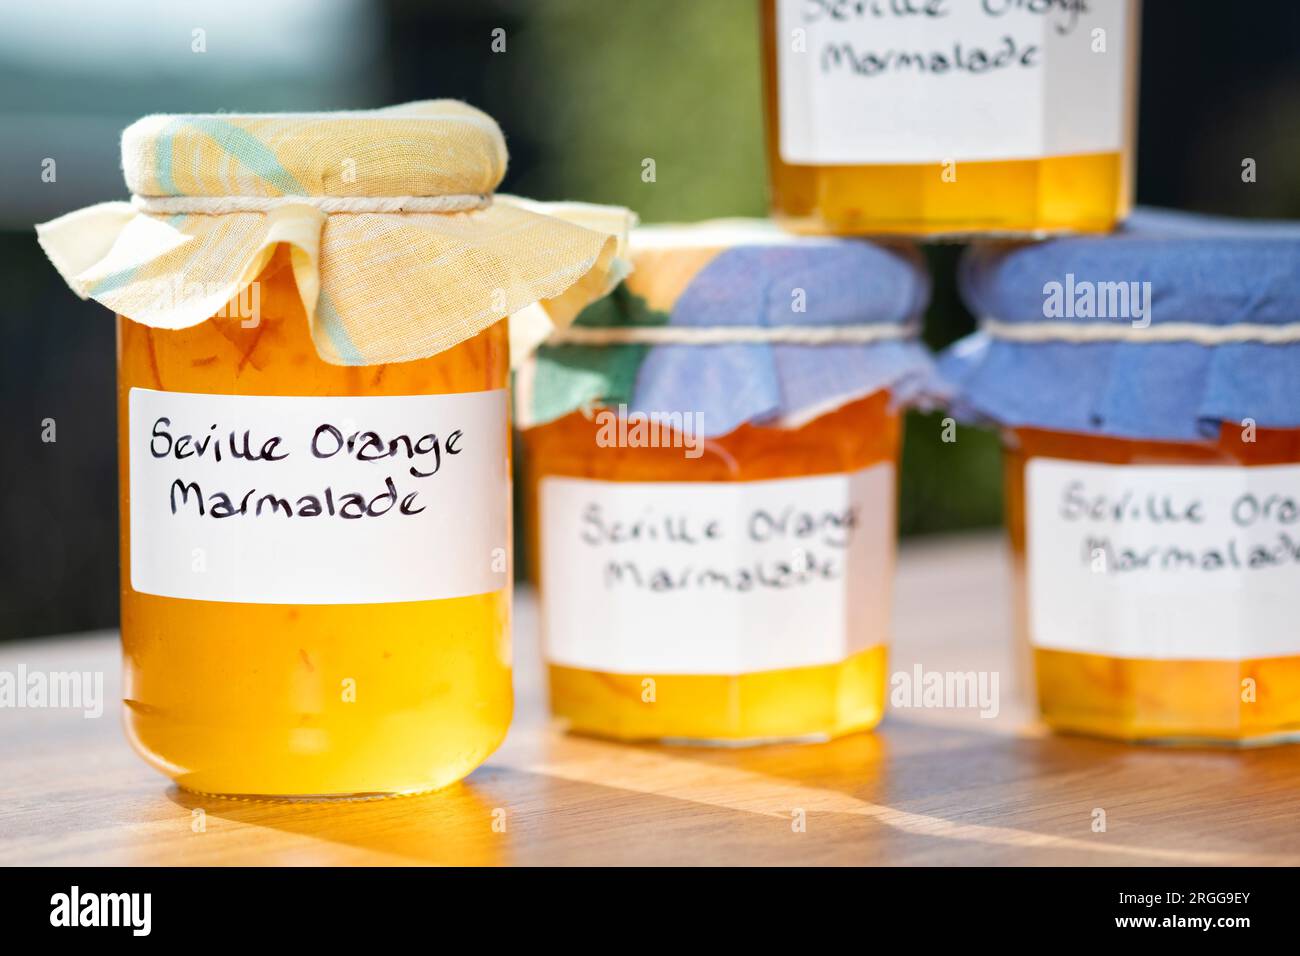 Un groupe de bocaux contenant de la marmelade d'orange de Séville faite maison. Les bocaux ont des étiquettes écrites à la main et des garnitures en tissu sur les couvercles Banque D'Images